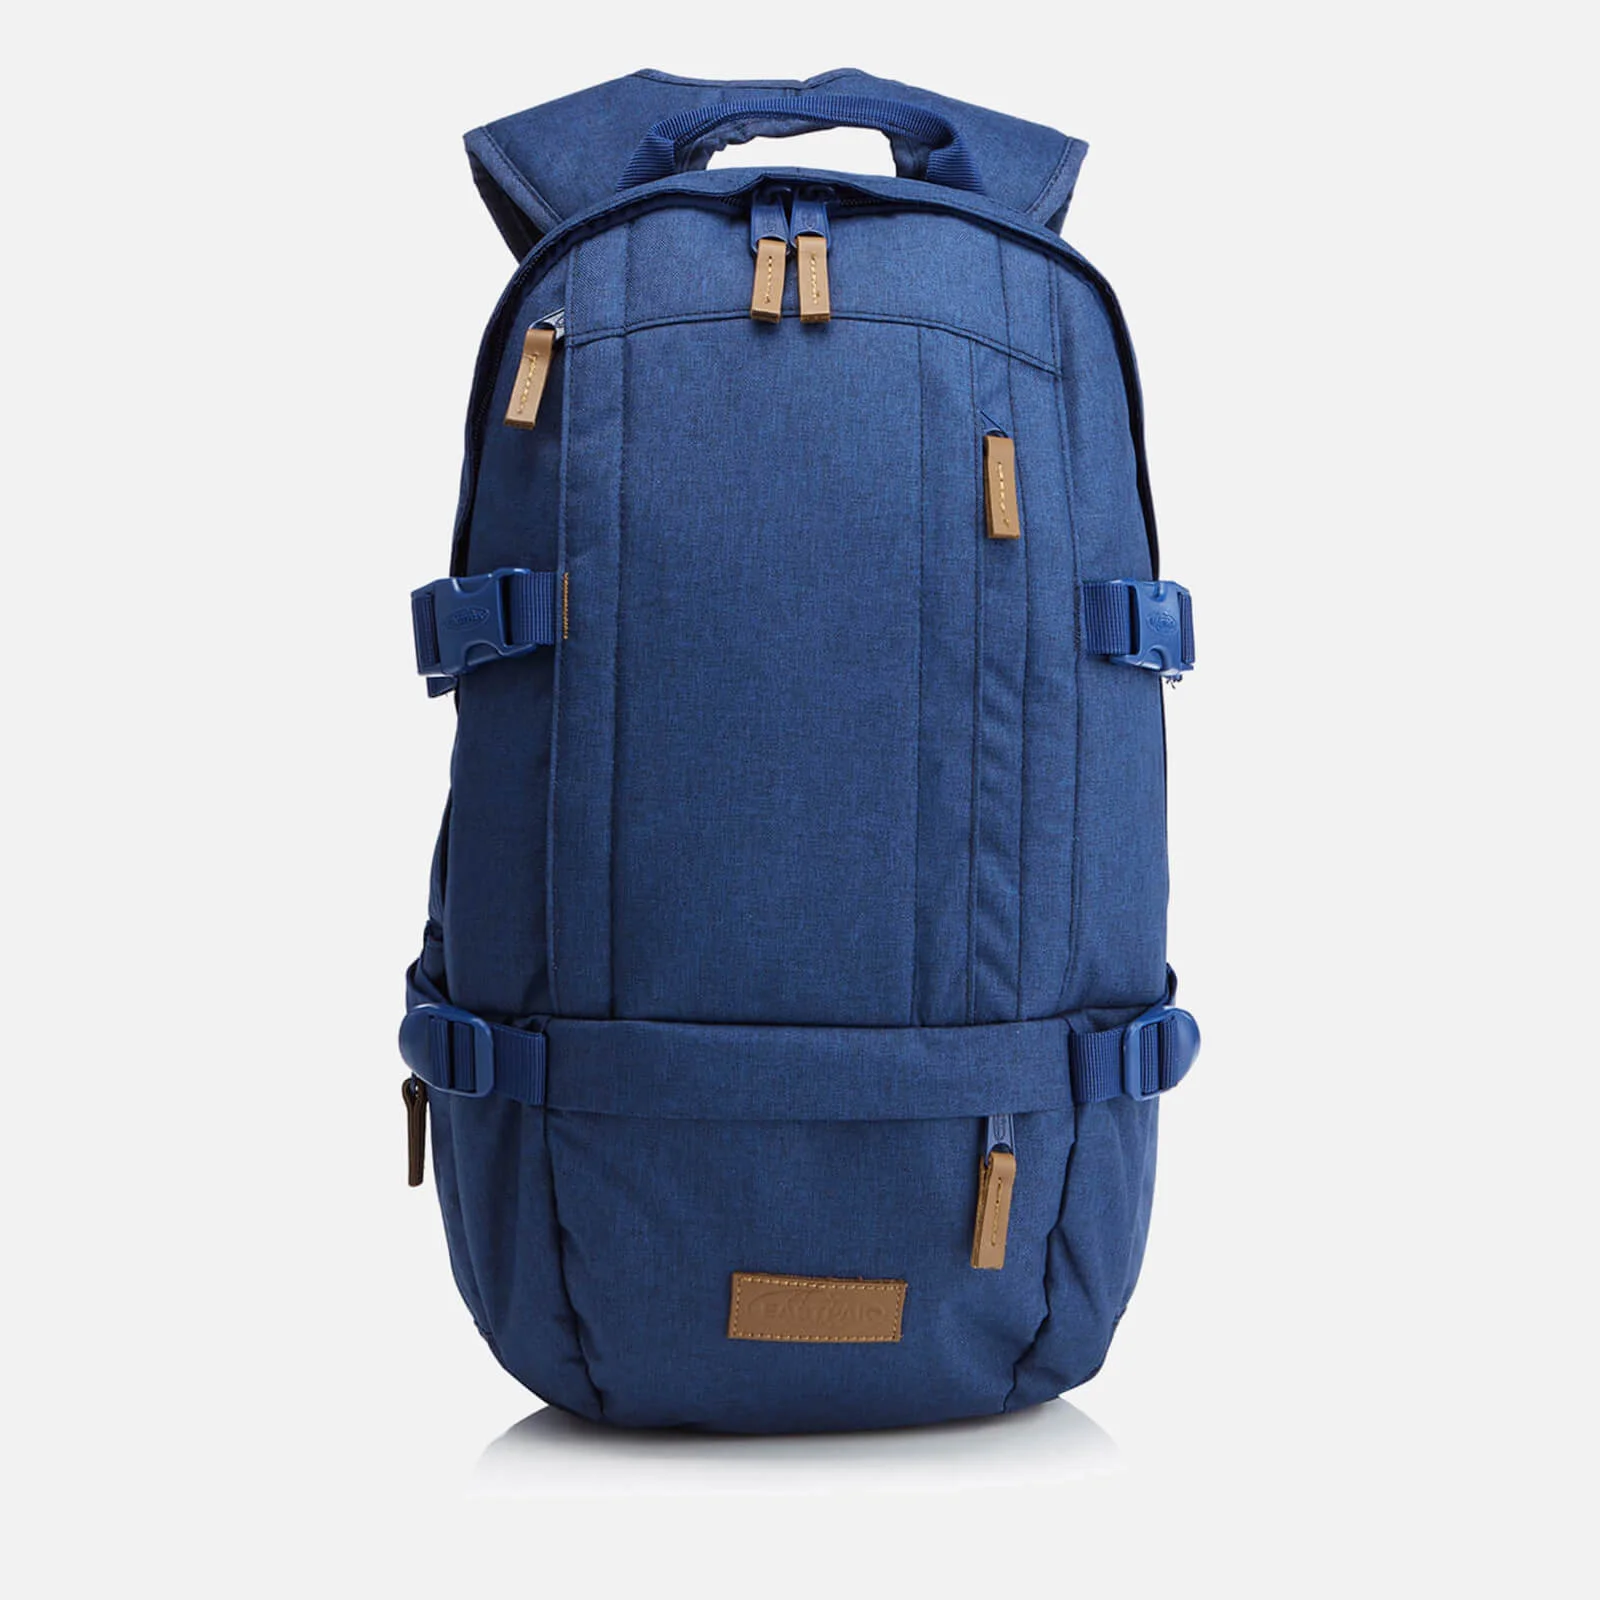 Eastpak Floid Backpack - Corlange Denim Image 1